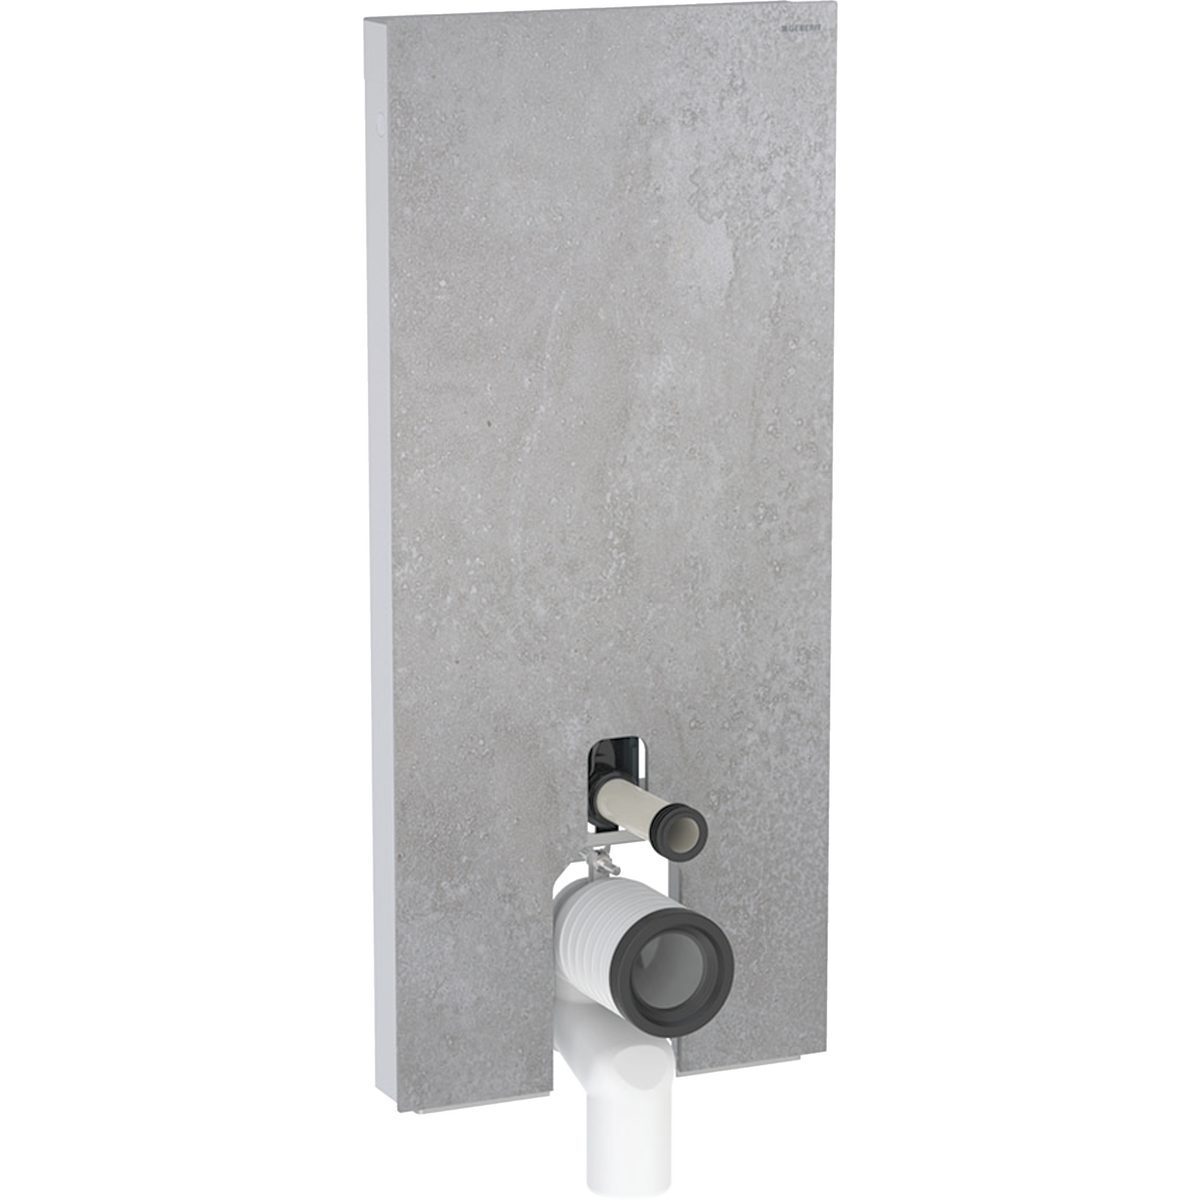 Monolith Sanitärmodul für Stand-WC, 114 cm, Frontverkleidung aus Steinzeug: Steinzeug Betonoptik, Aluminium